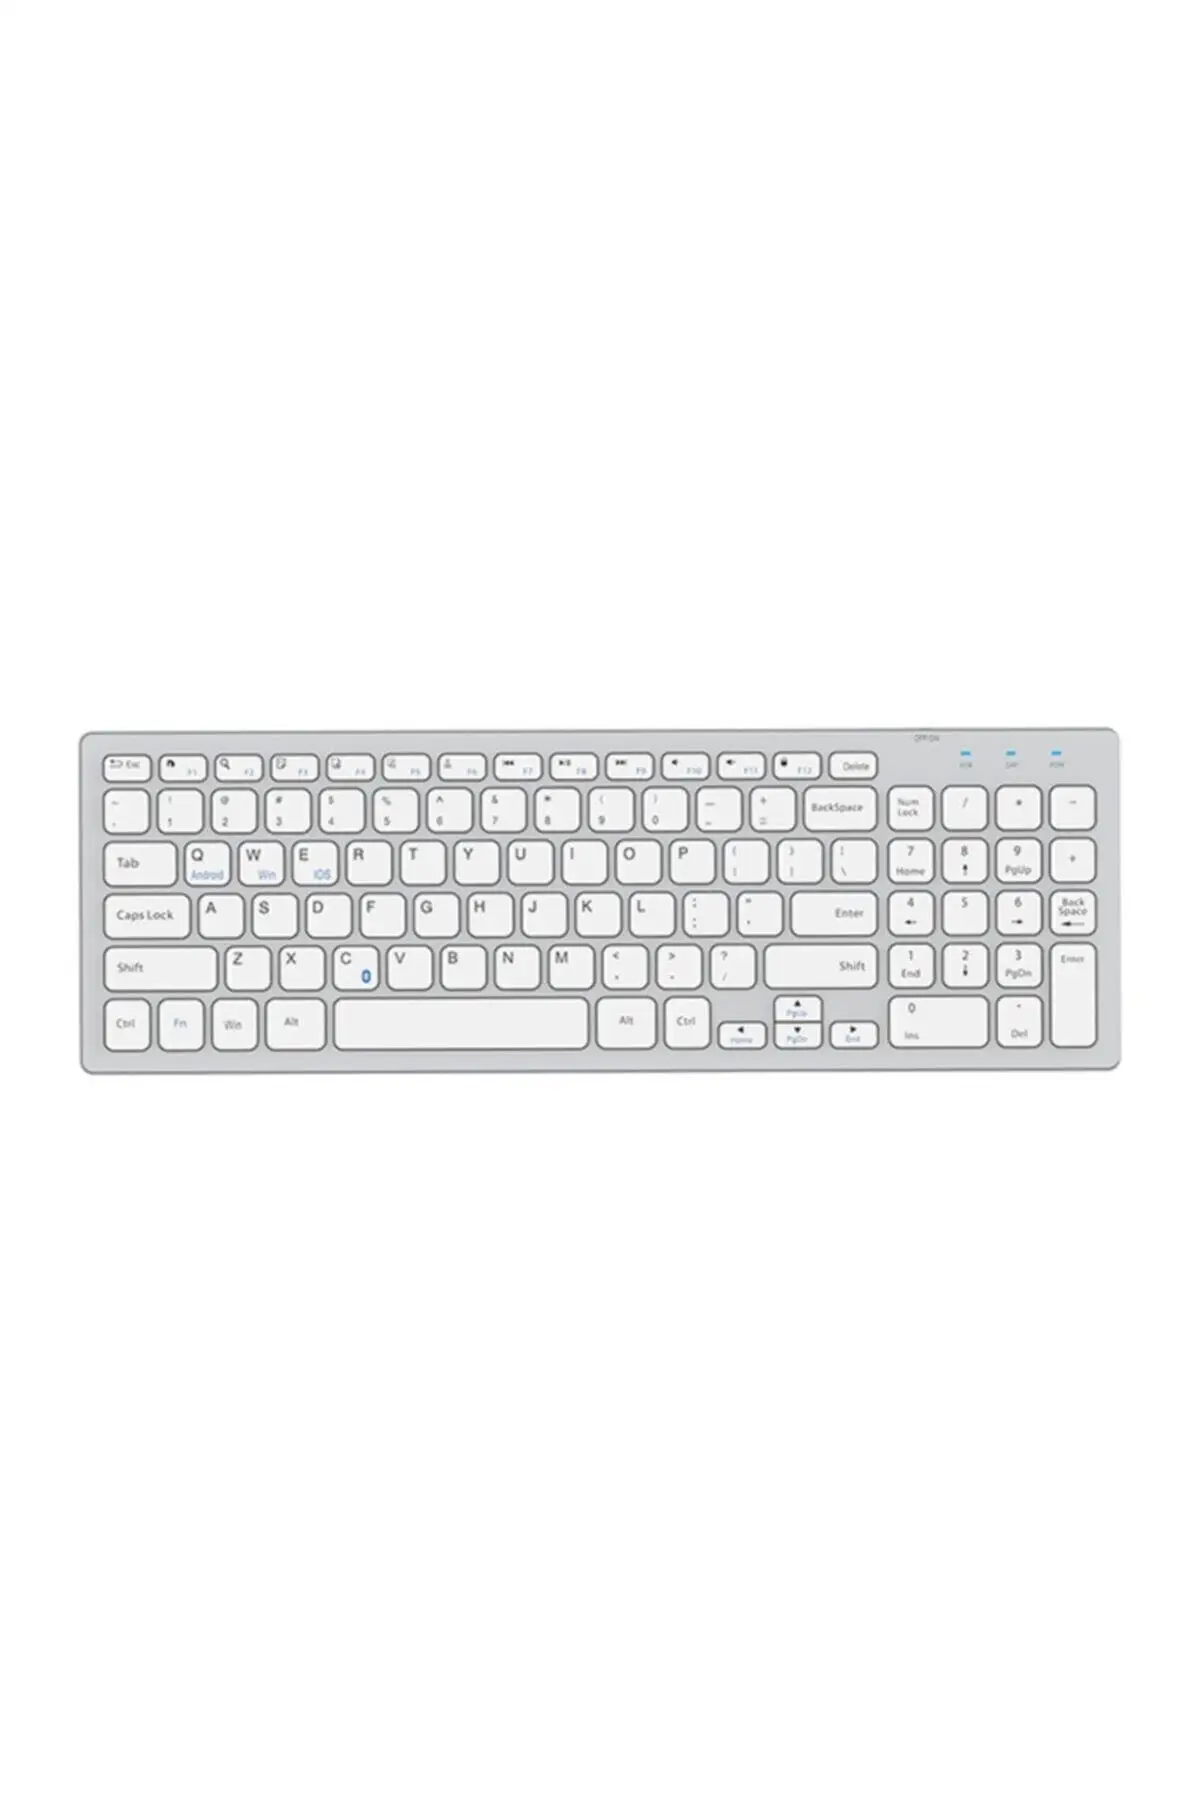 

Kb-80w White/silver 2.4ghz Ultra Slim Q Wireless Keyboard